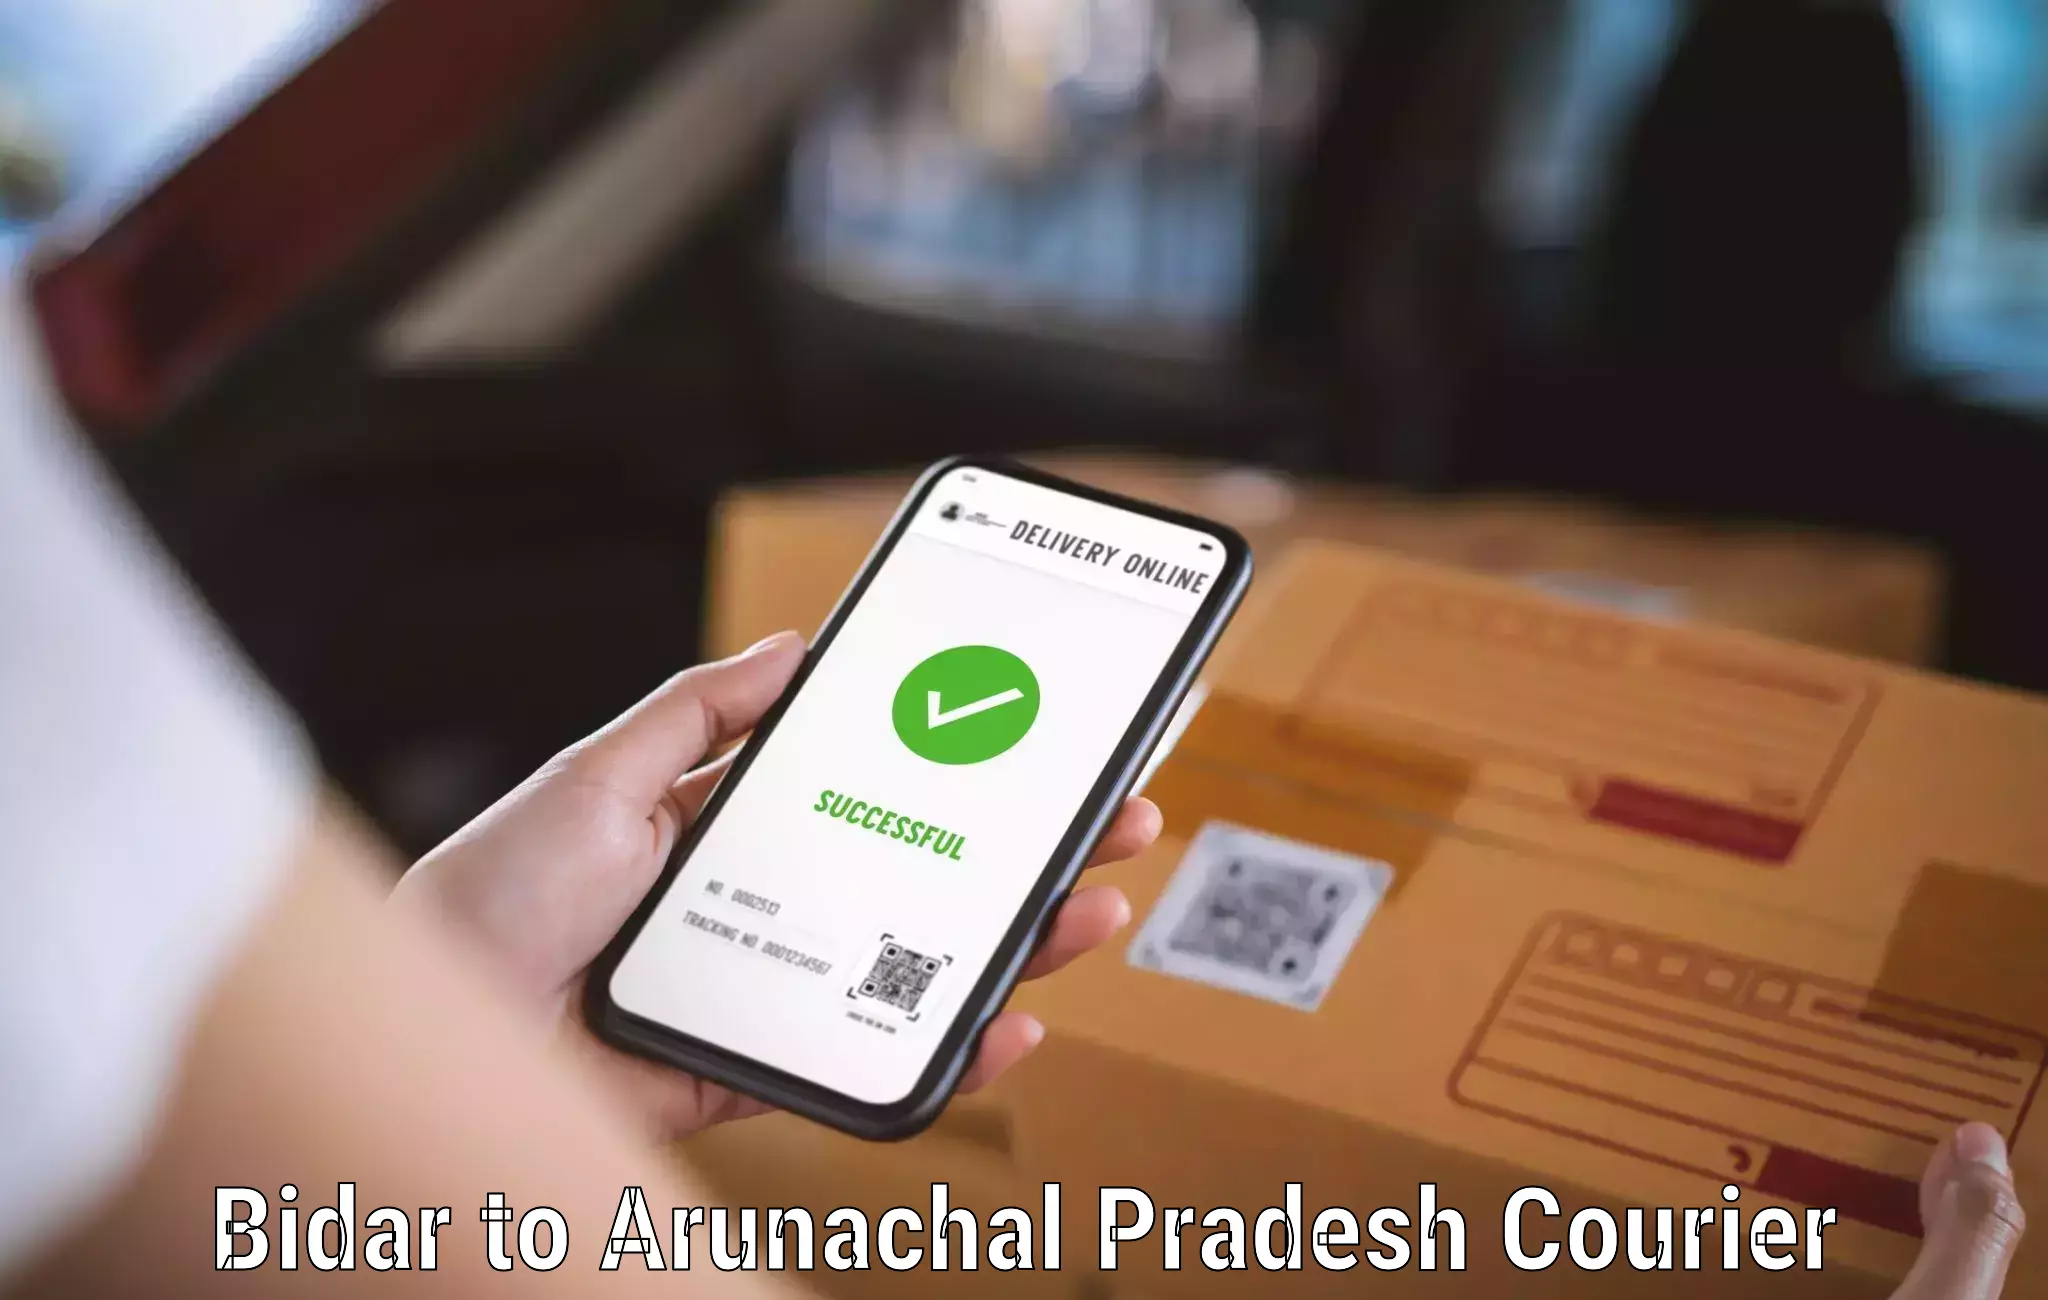 Doorstep delivery service Bidar to Arunachal Pradesh